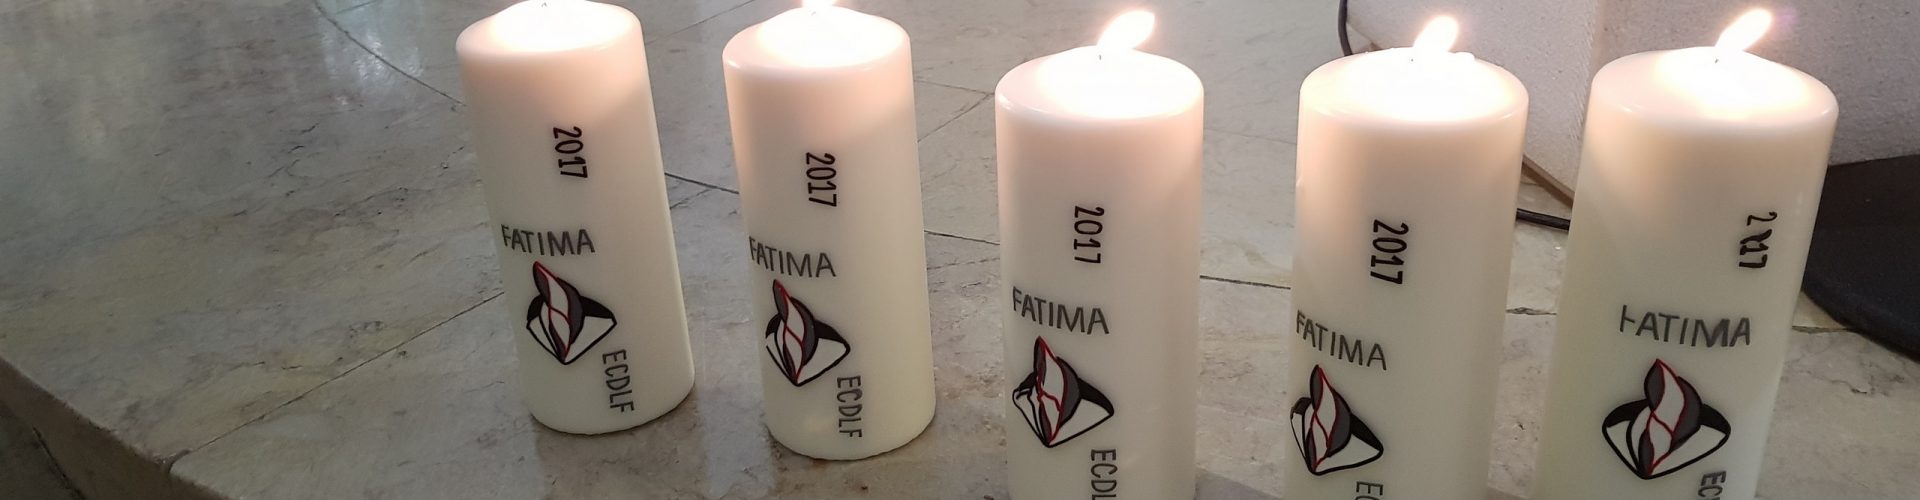 Bougies Assemblées de Fatima 2017